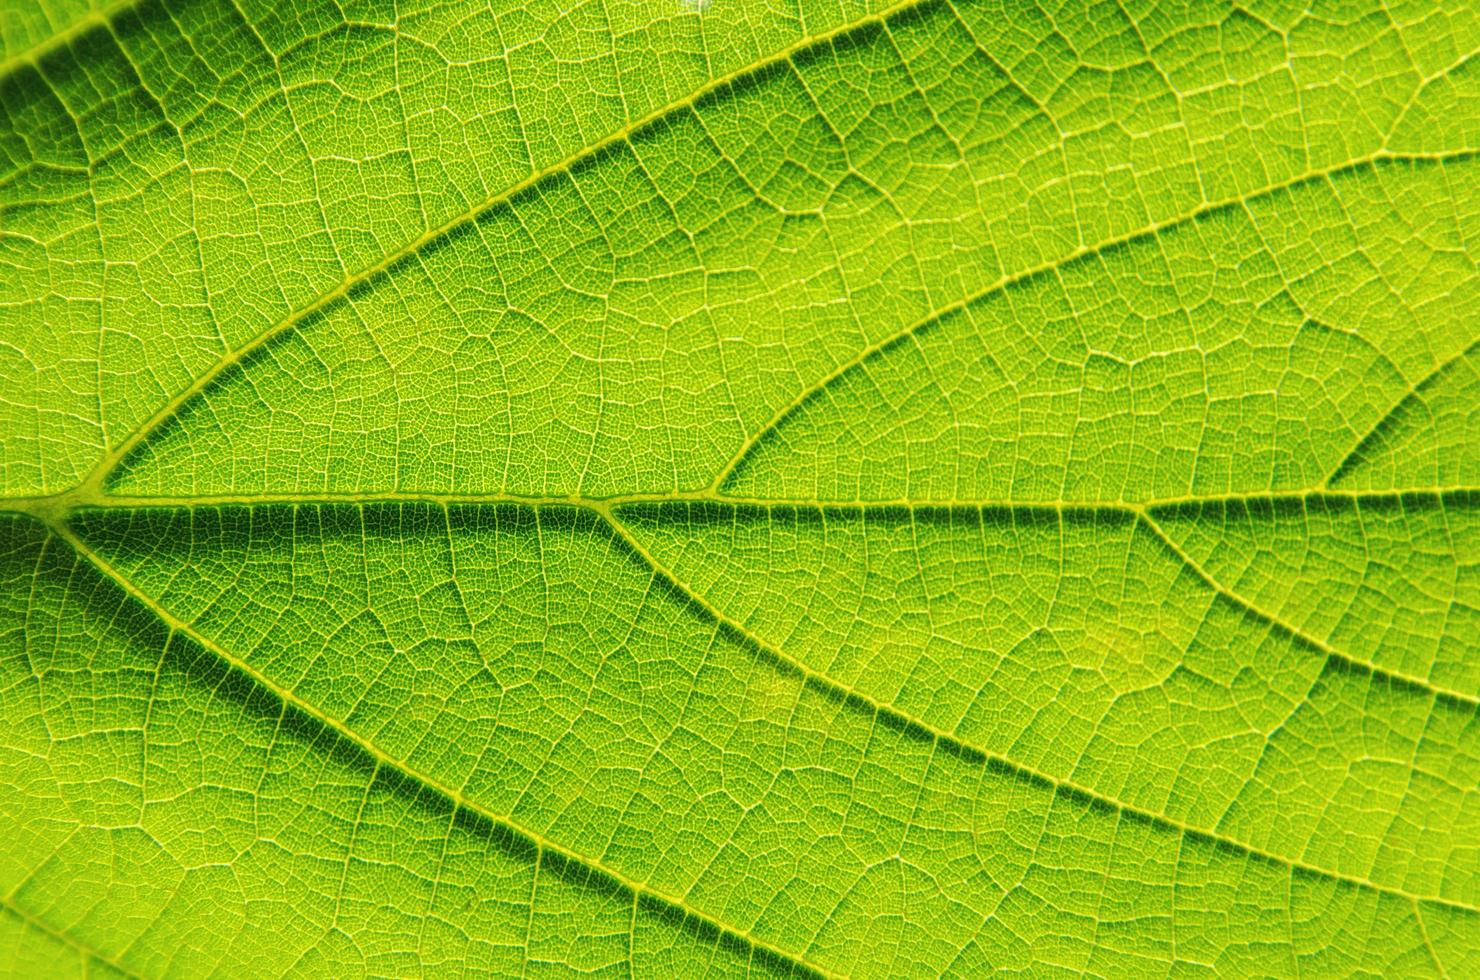 texture des feuilles vertes et fibre des feuilles, fond de feuille verte. photo